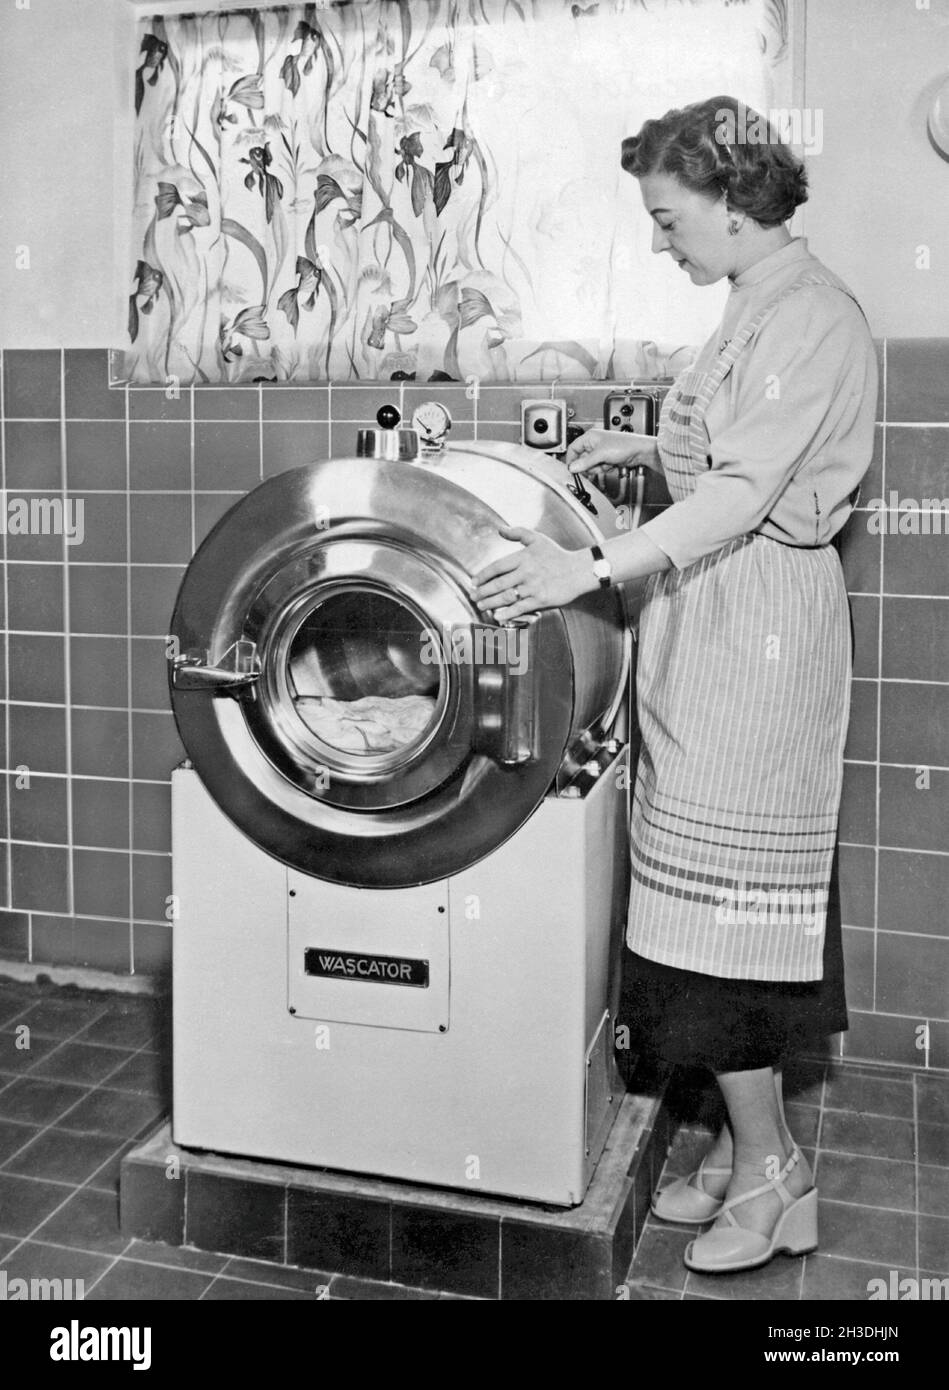 Faire la lessive dans les années 1950.Une dame fait la démonstration de la nouvelle machine à laver fabriquée par AB Wascator. Banque D'Images